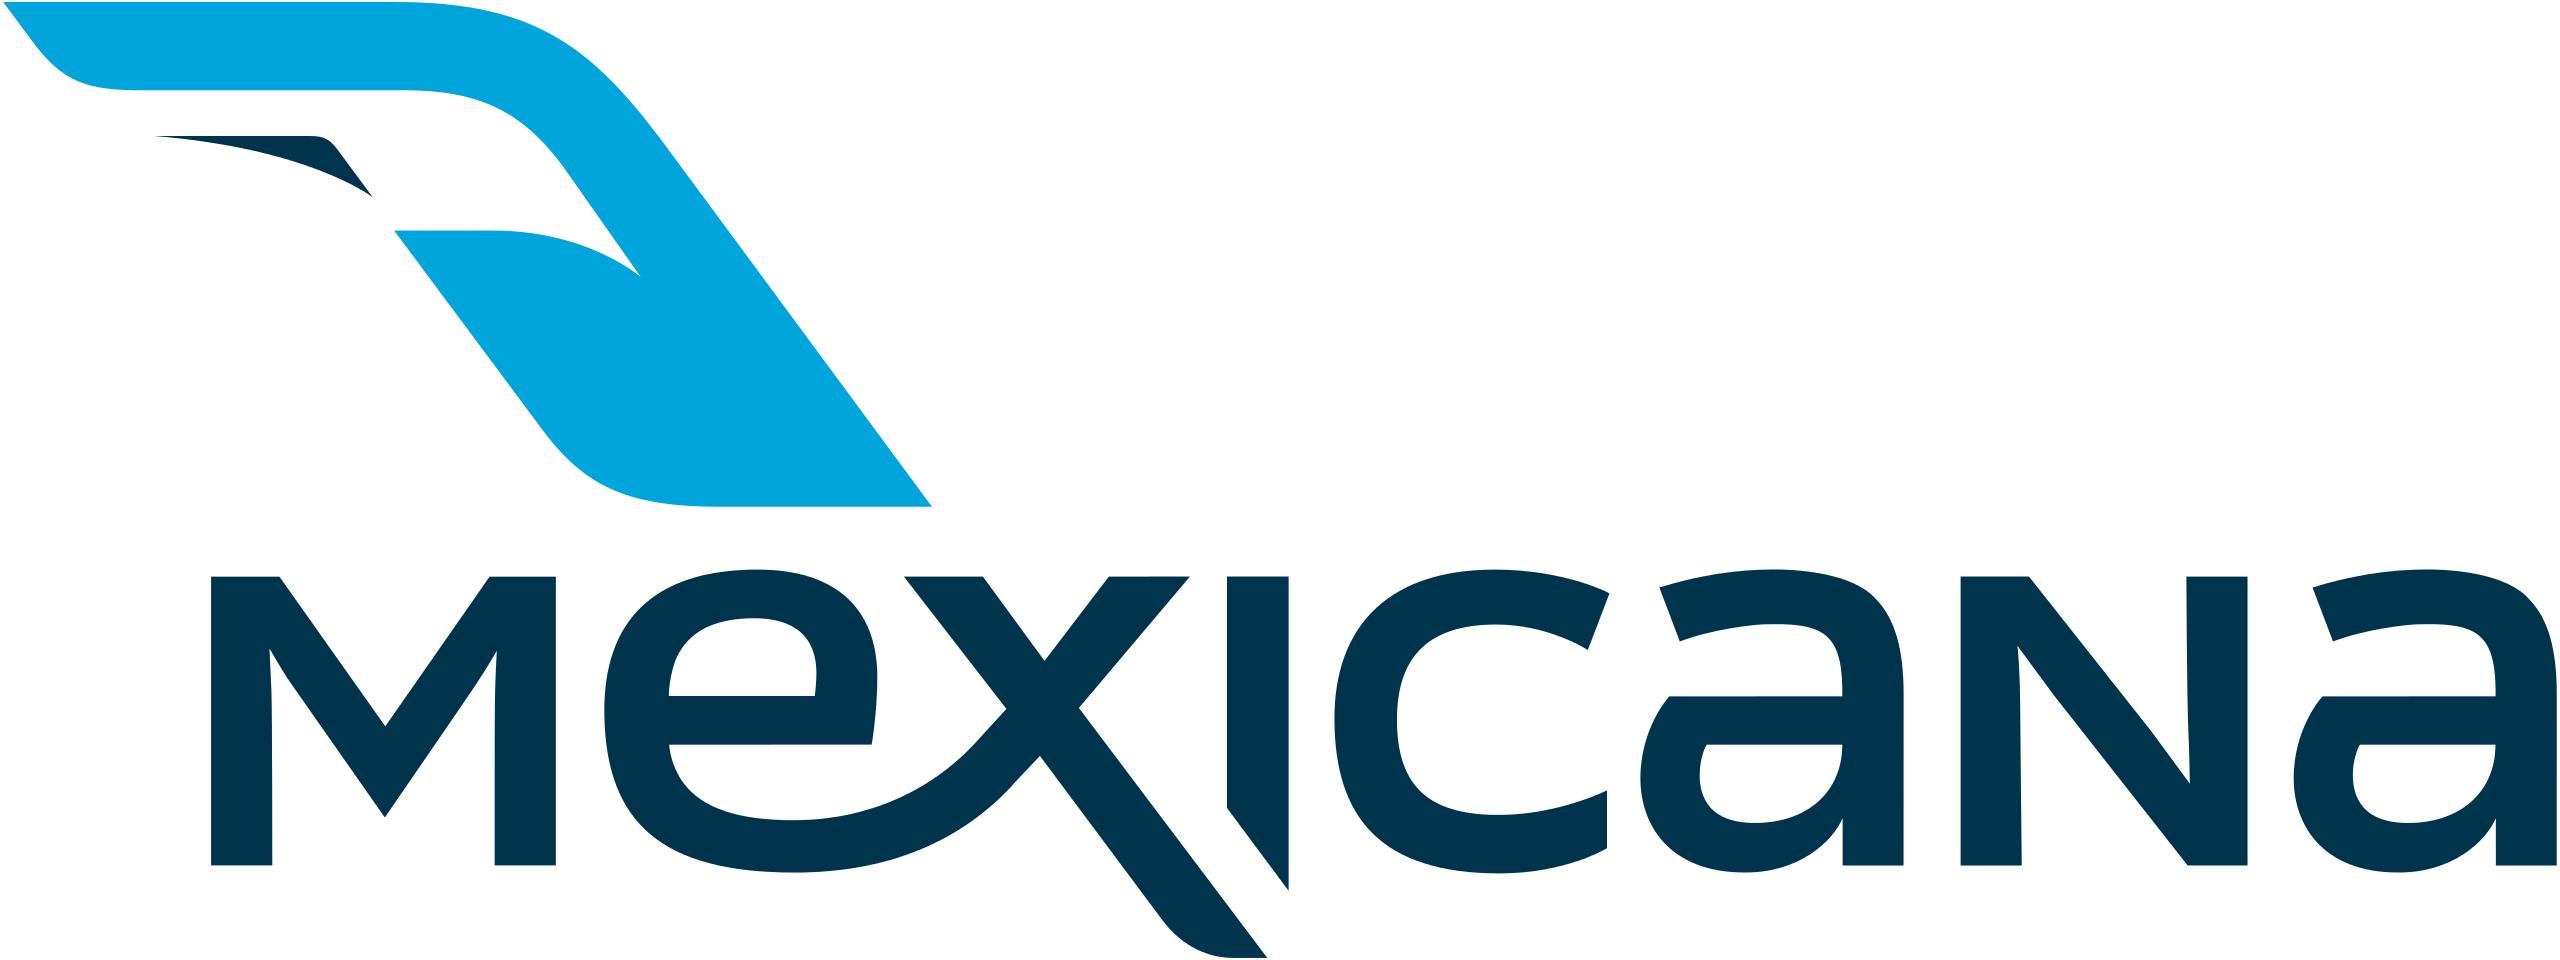 Mexicana de Aviacion Logo